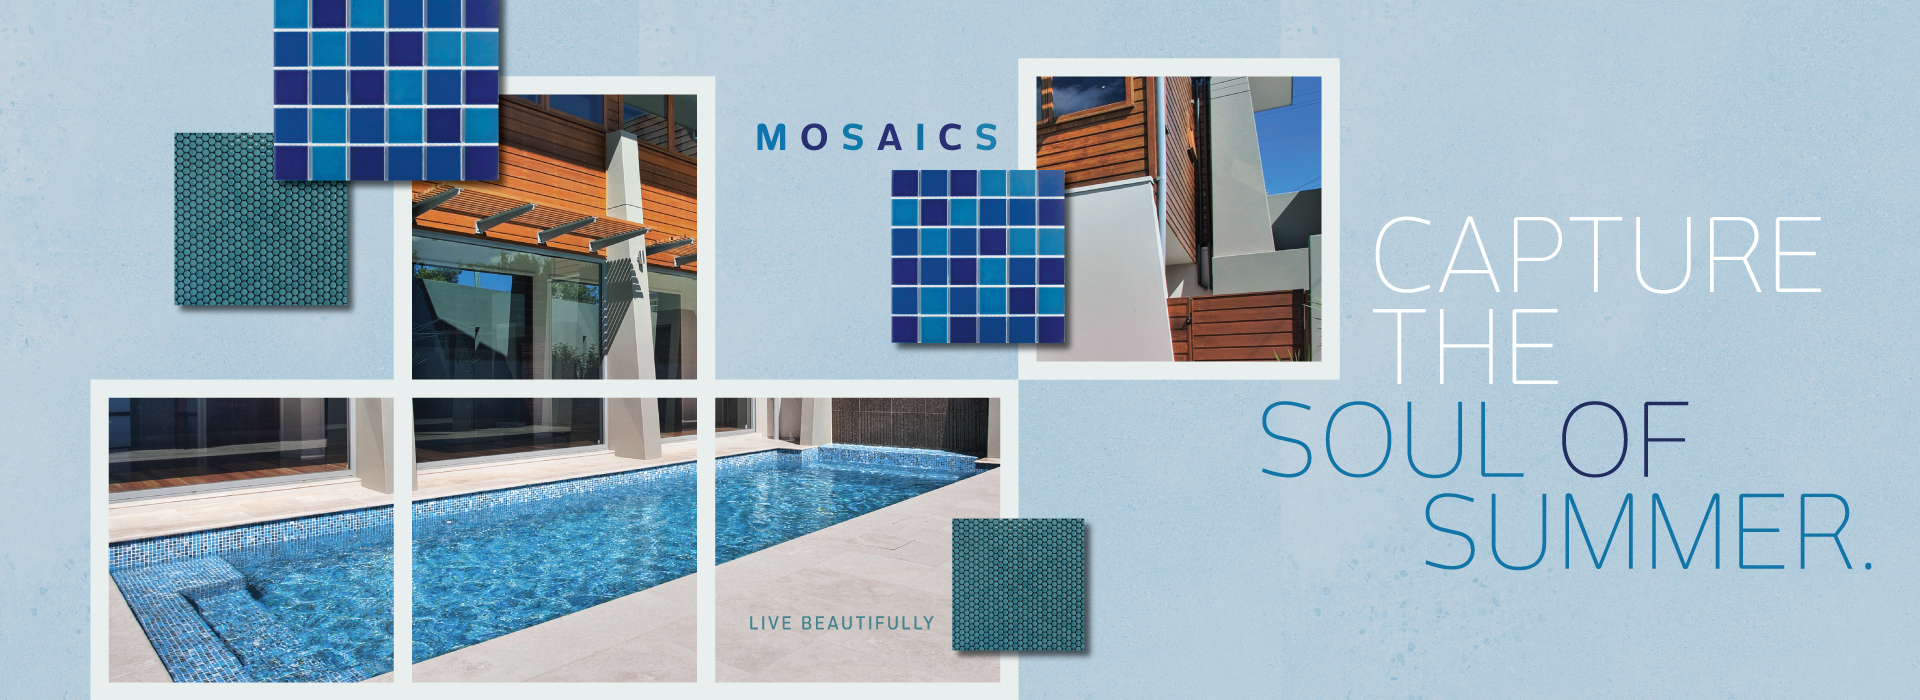 Swimming Pool Mosaics